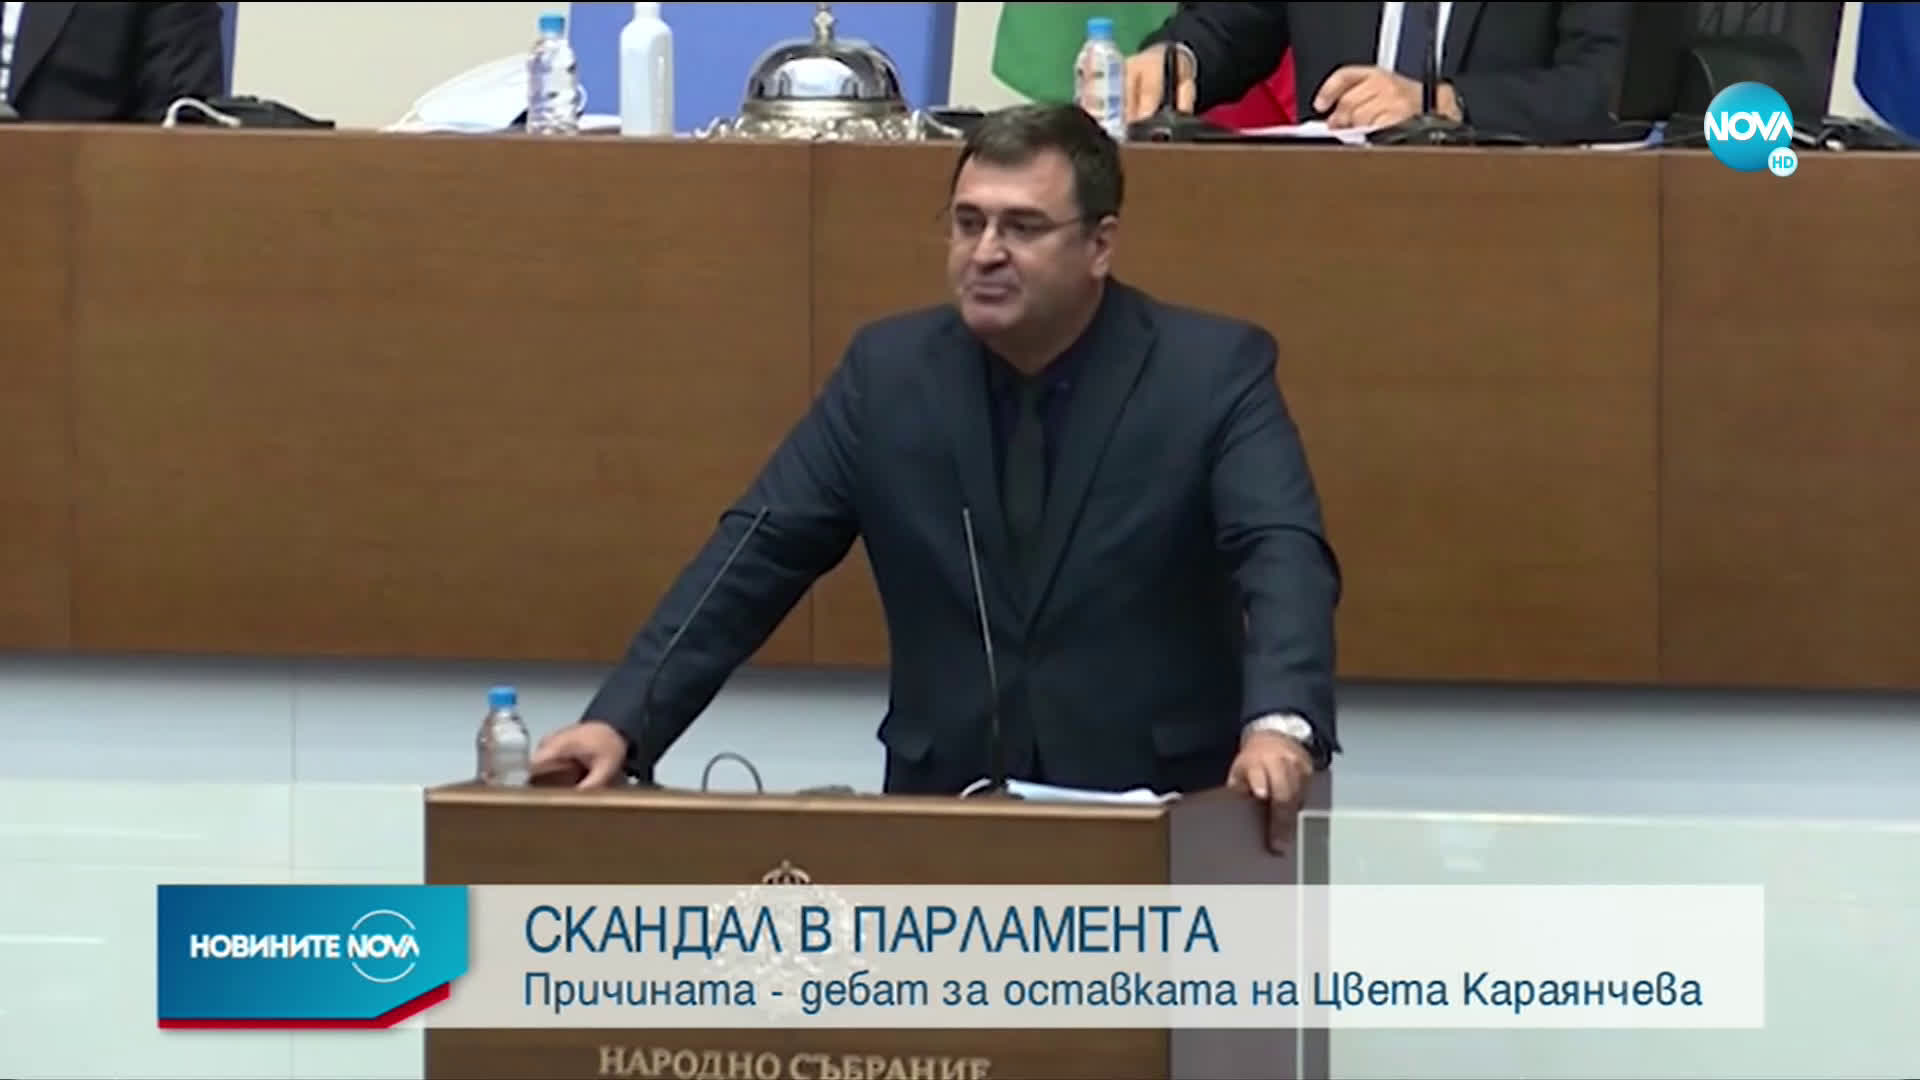 Народното събрание разисква искането за оставка на Цвета Караянчева (ОБЗОР)